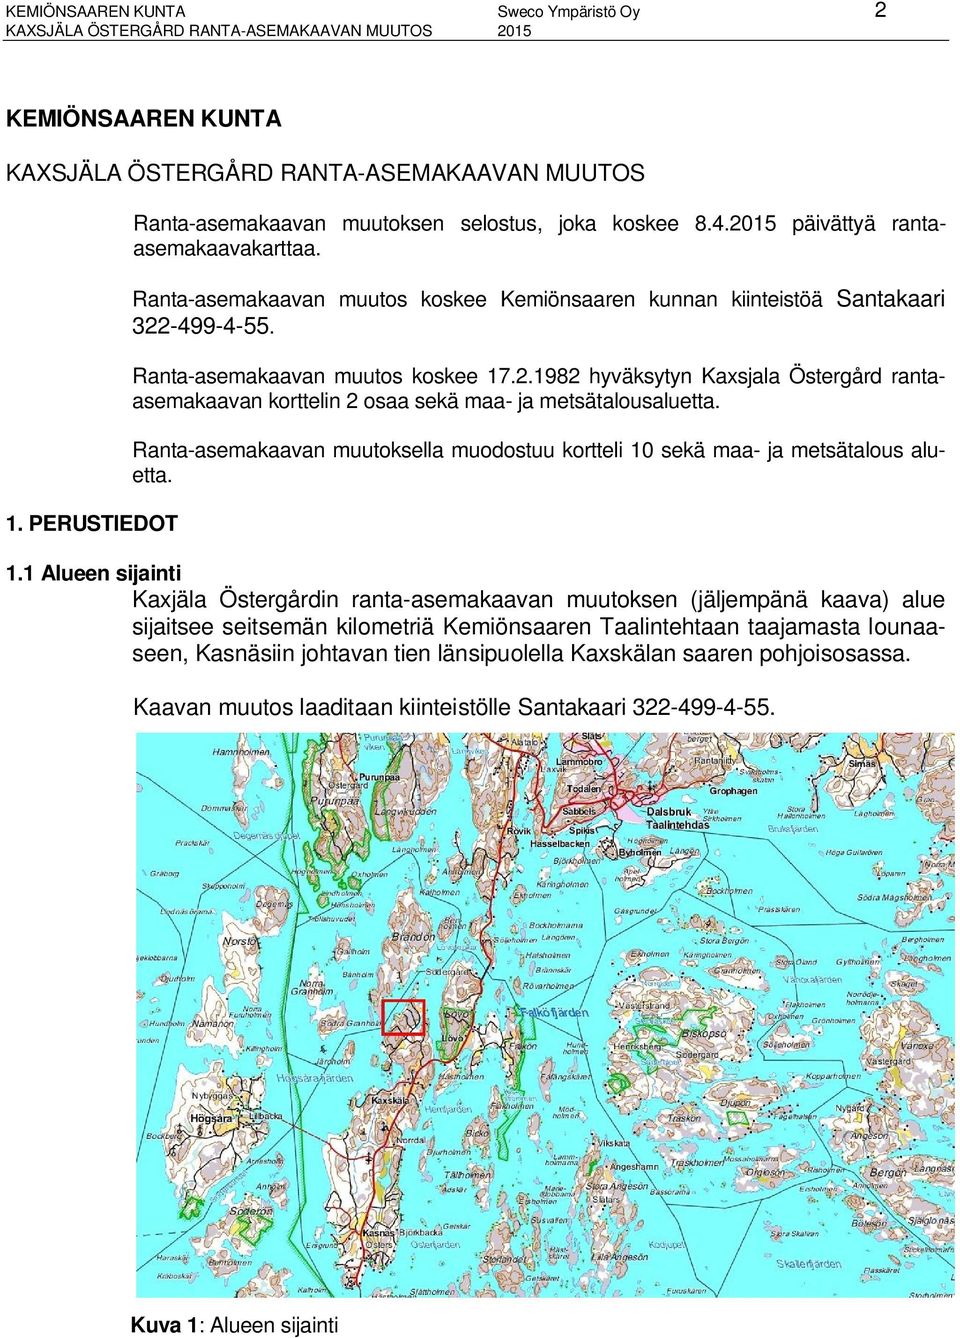 Ranta-asemakaavan muutos koskee 17.2.1982 hyväksytyn Kaxsjala Östergård rantaasemakaavan korttelin 2 osaa sekä maa- ja metsätalousaluetta.